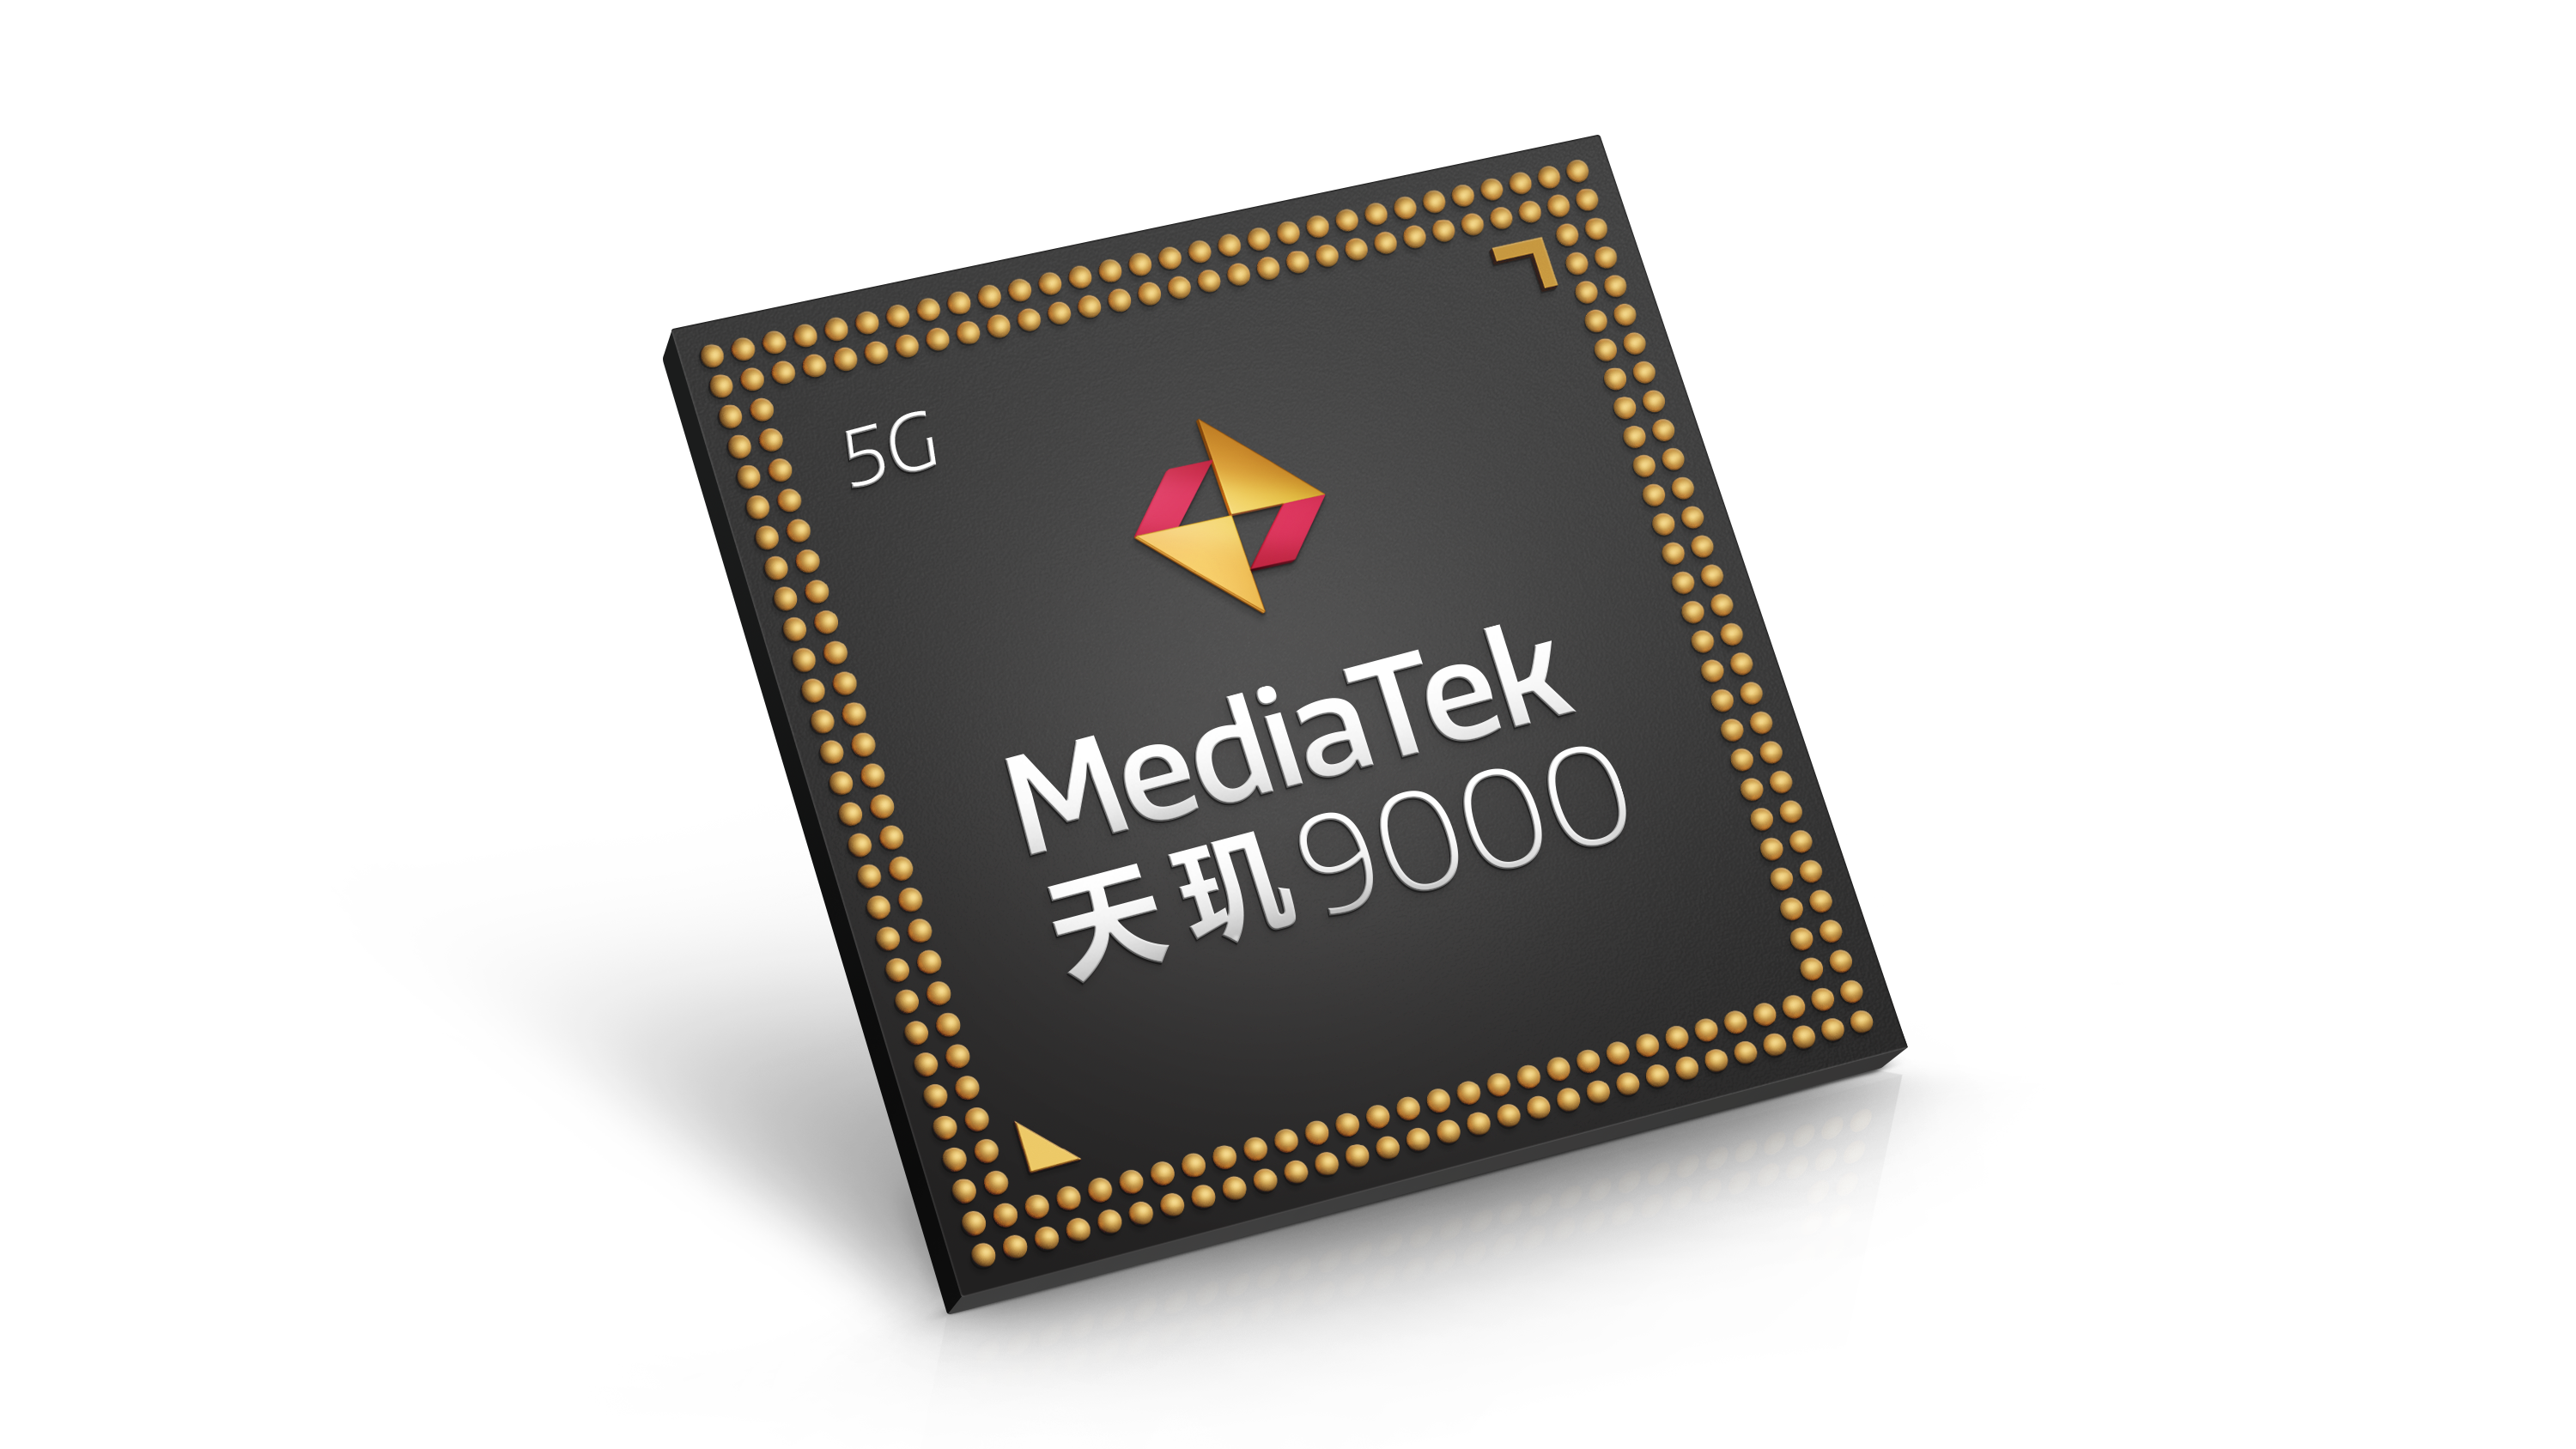 MediaTek发布天玑9000移动平台，携创新科技步入旗舰新世代